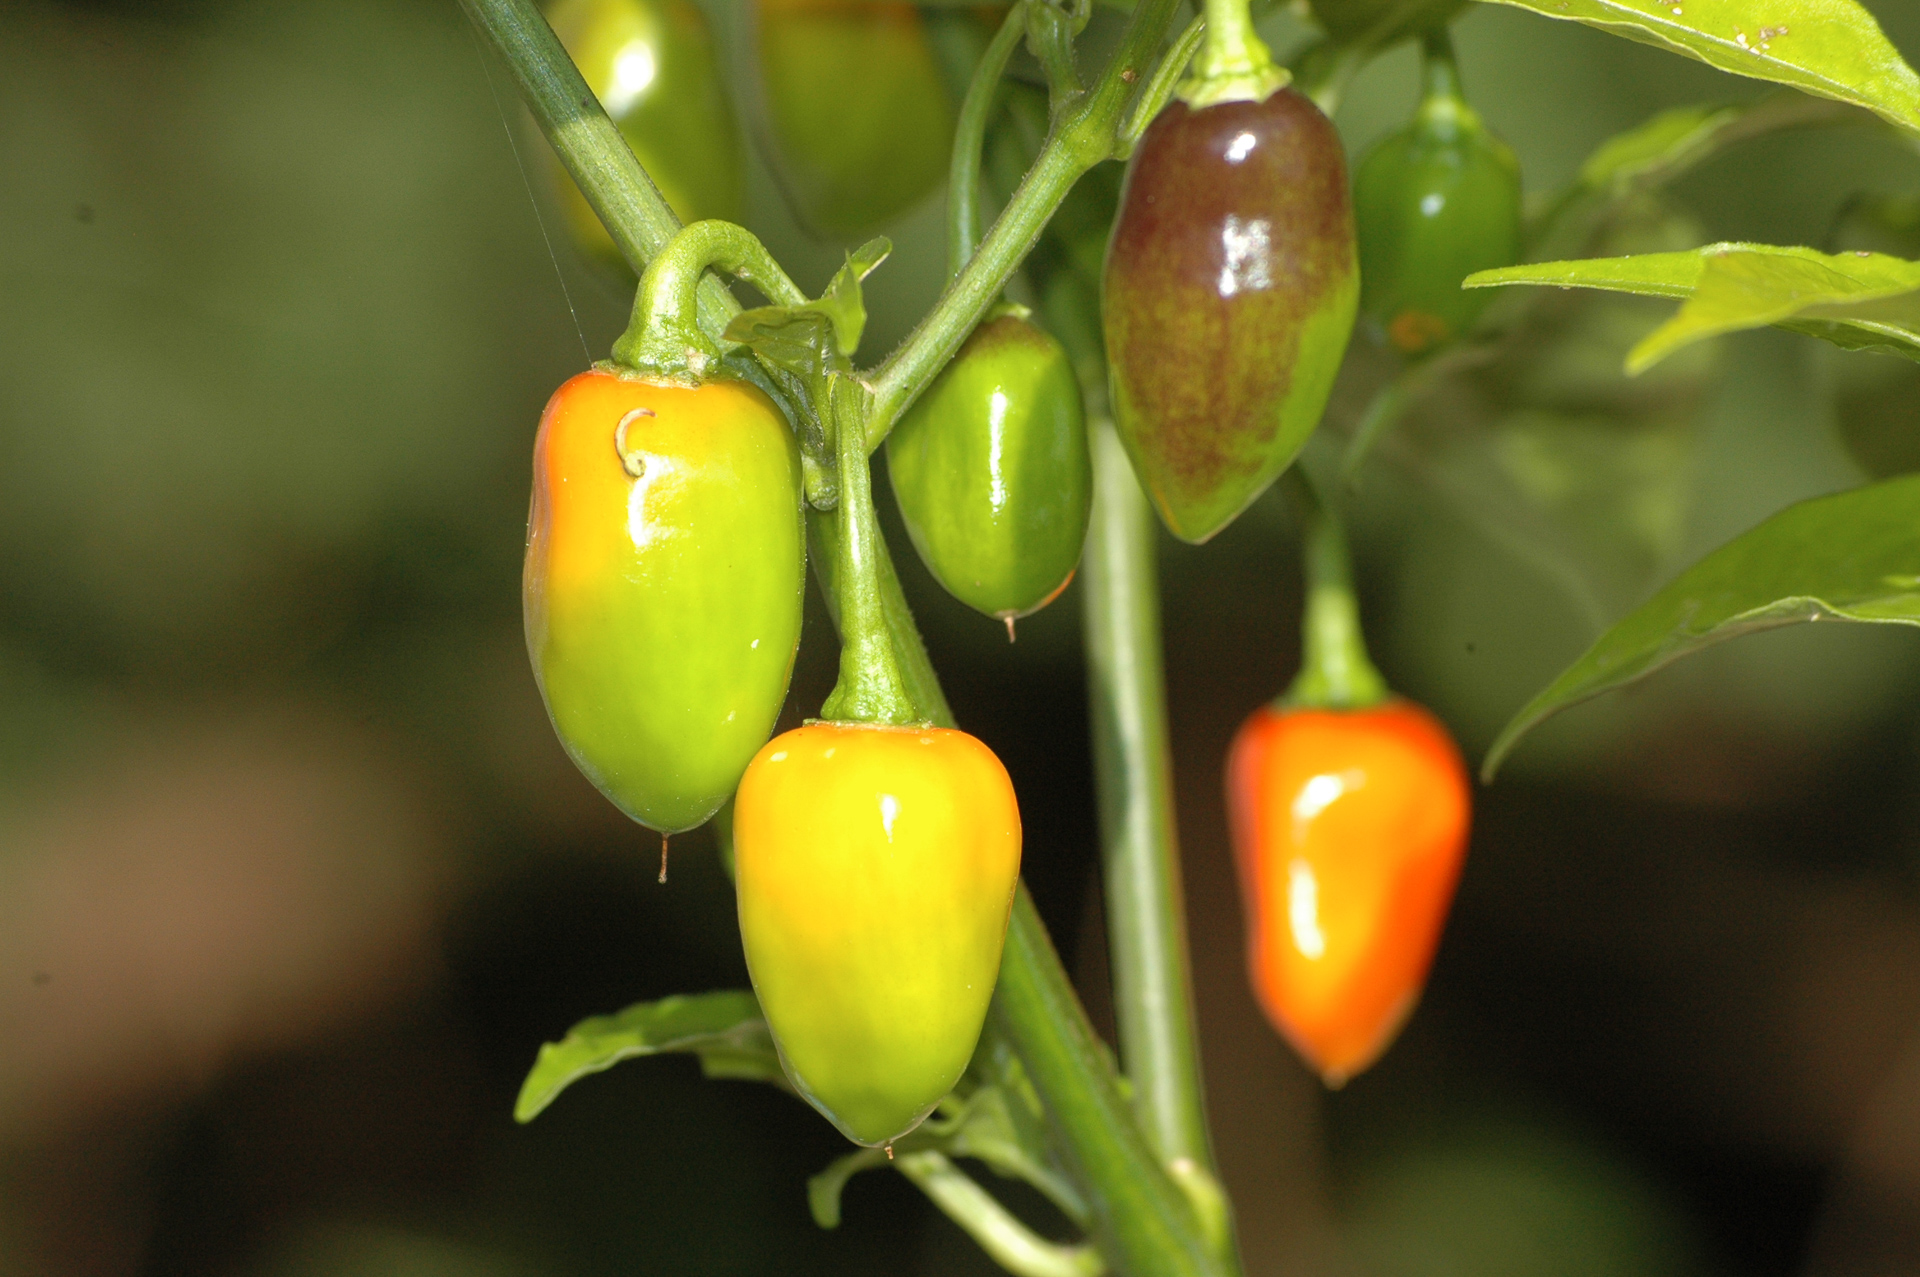 Bgh 1732 - Capsicum frutescens - Chilisorte